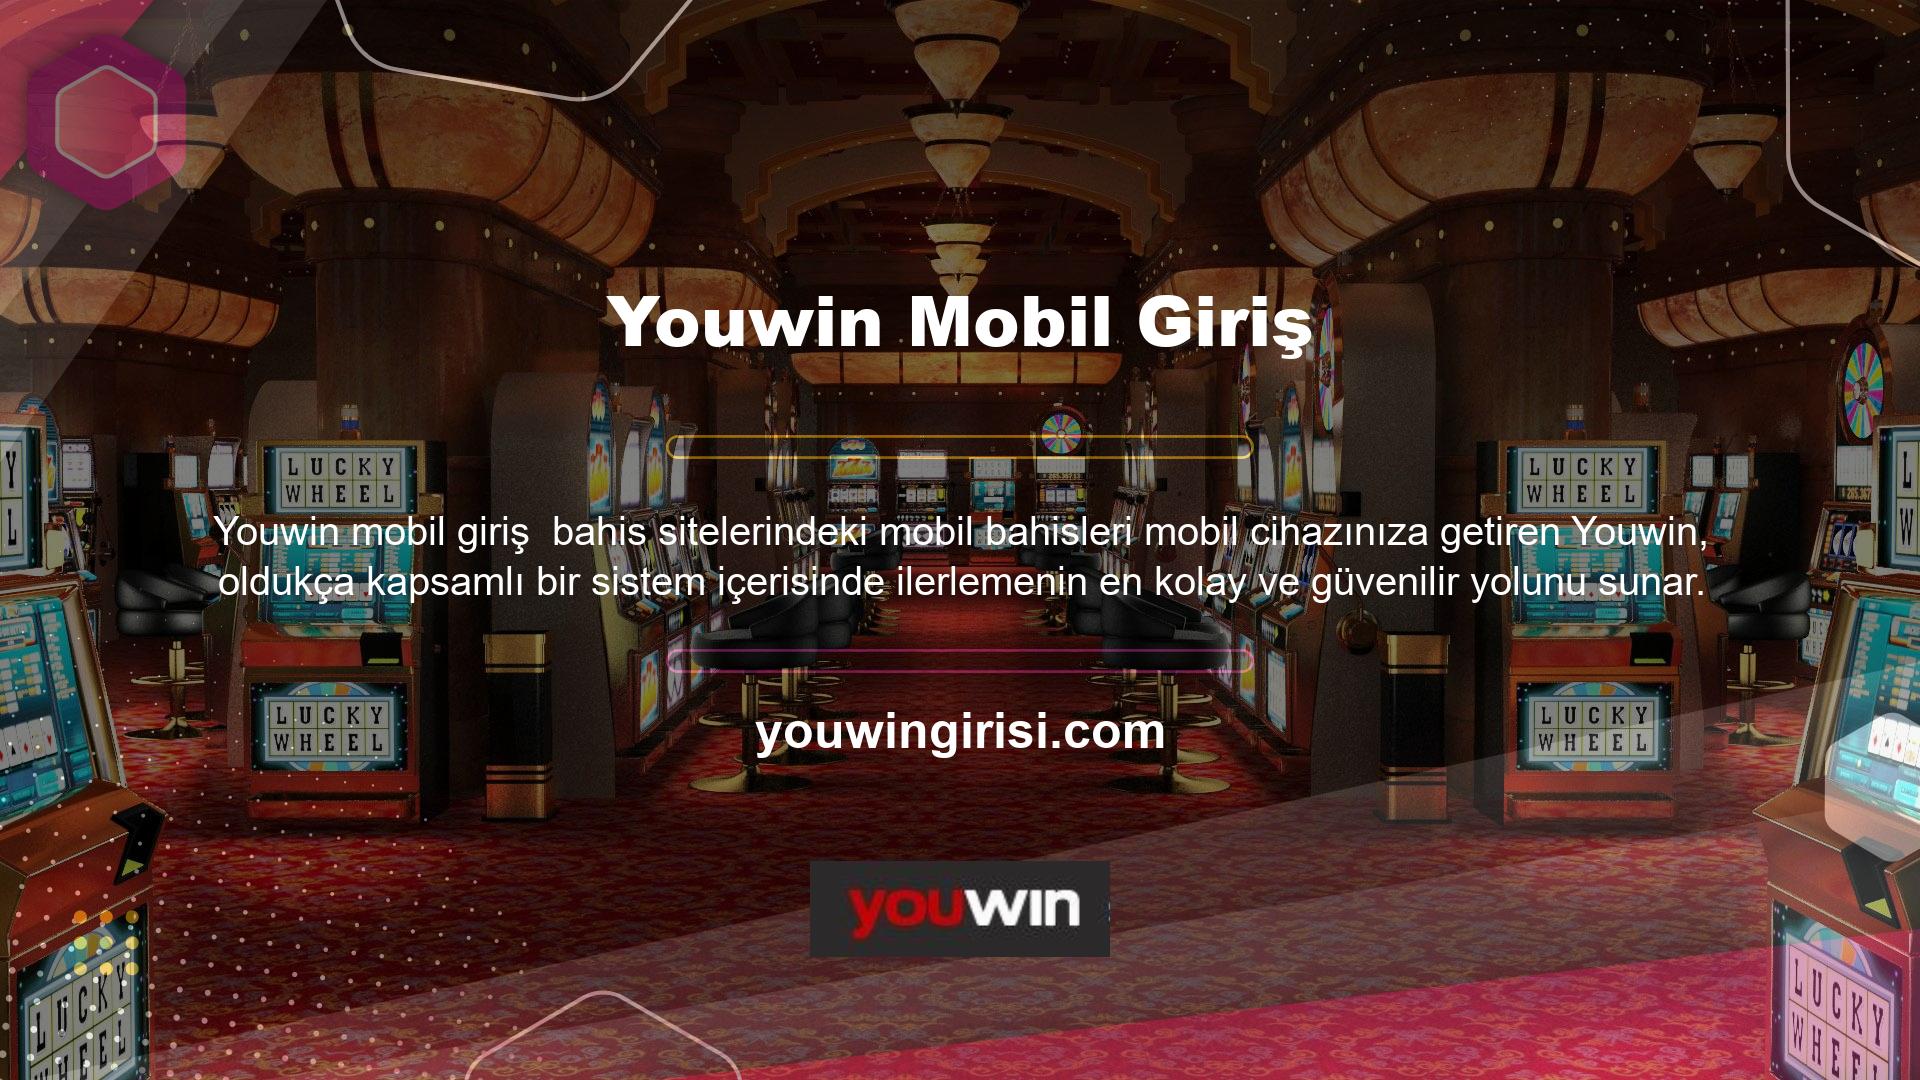 Youwin mobil giriş seçeneğini doğru anlamak ve kullanmak için cep telefonunuzdan siteye giriş yapmalısınız